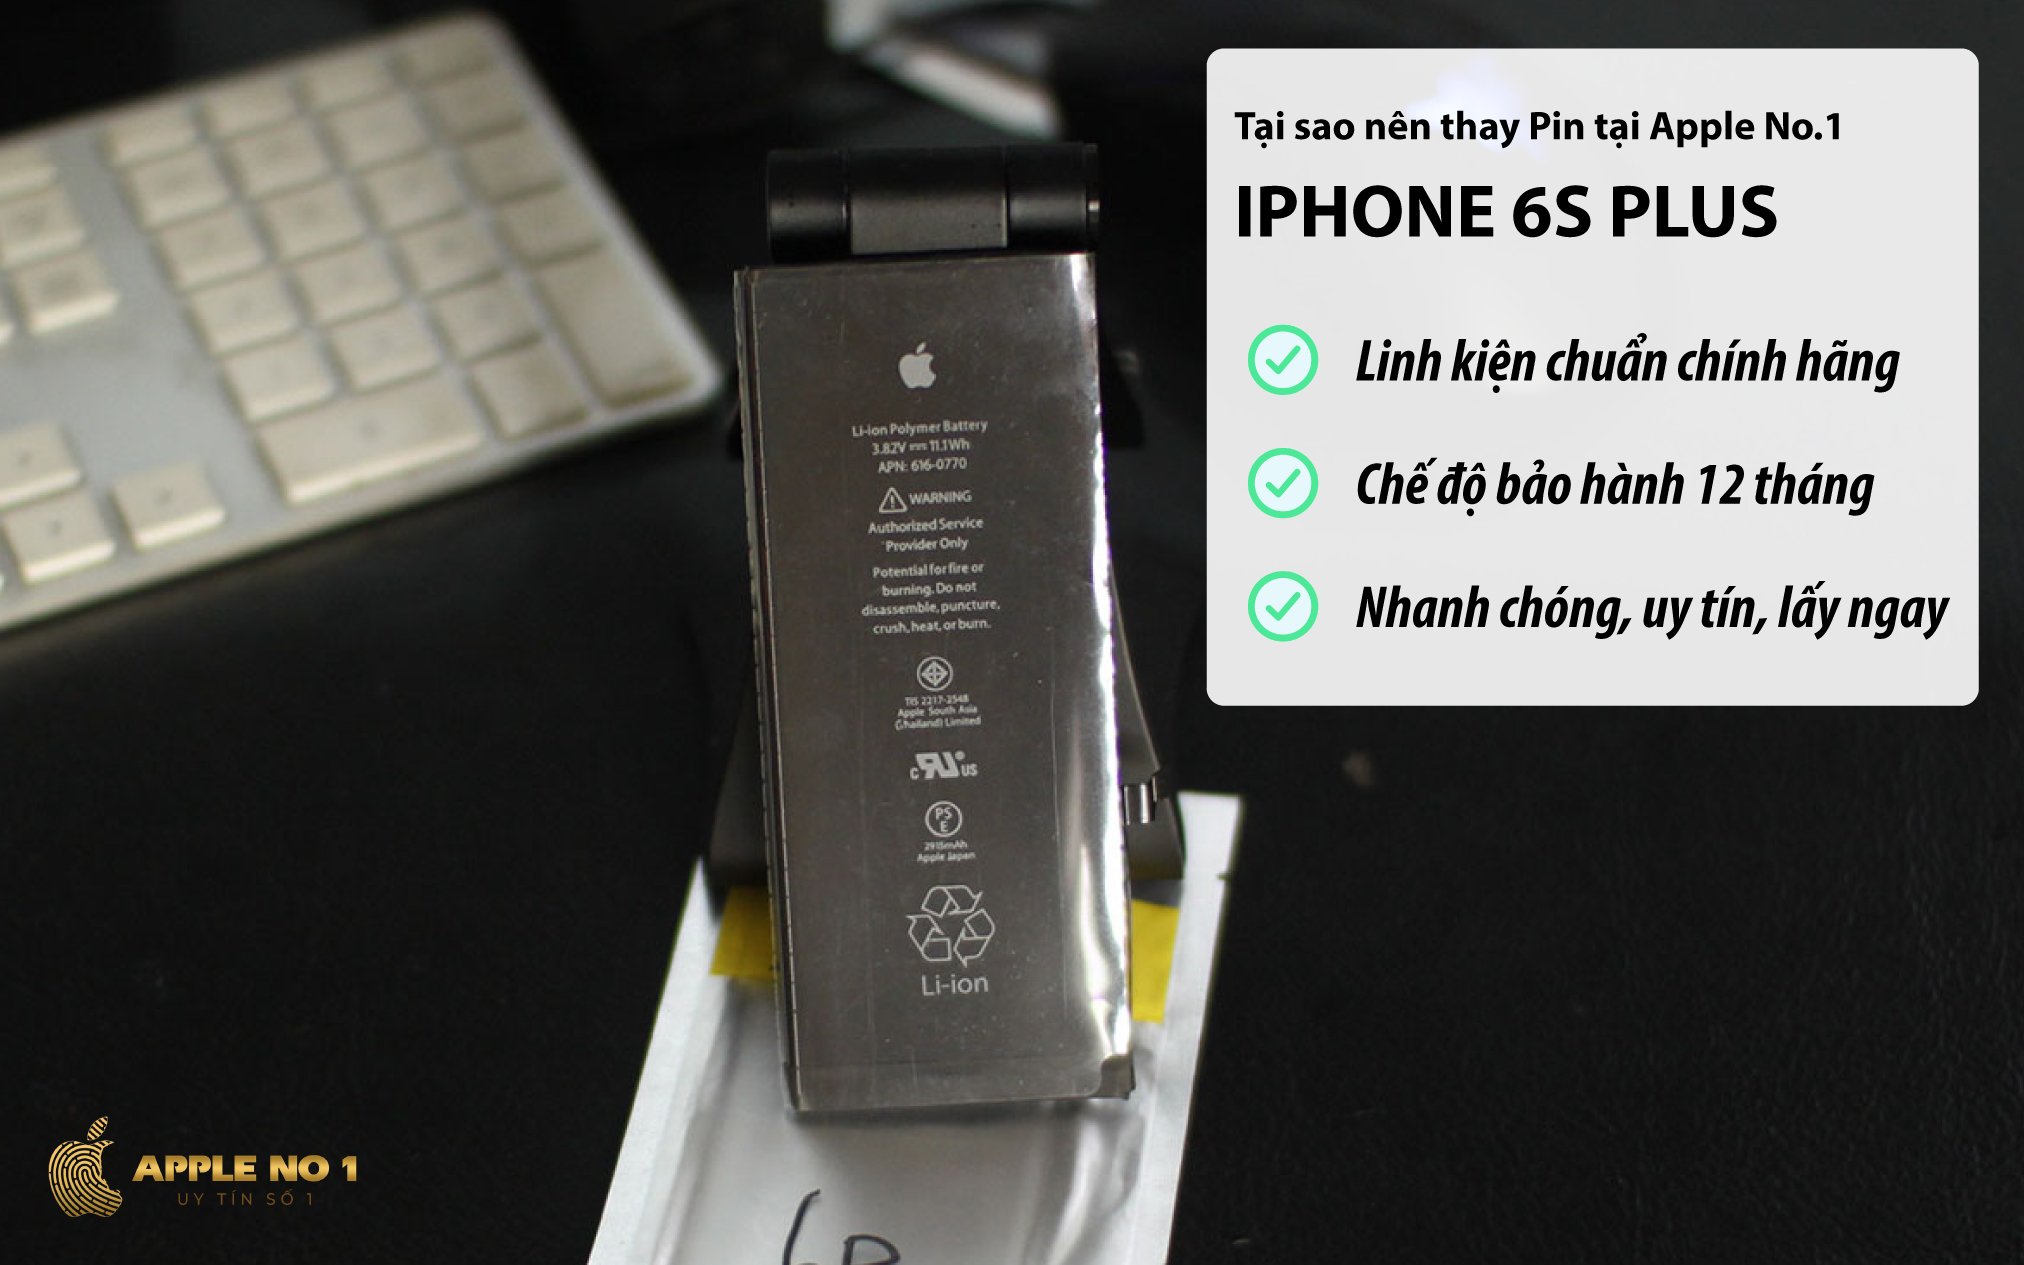 Dịch vụ thay pin iPhone 6s plus dung lượng chuẩn chính hãng nhanh chóng tại Apple No.1